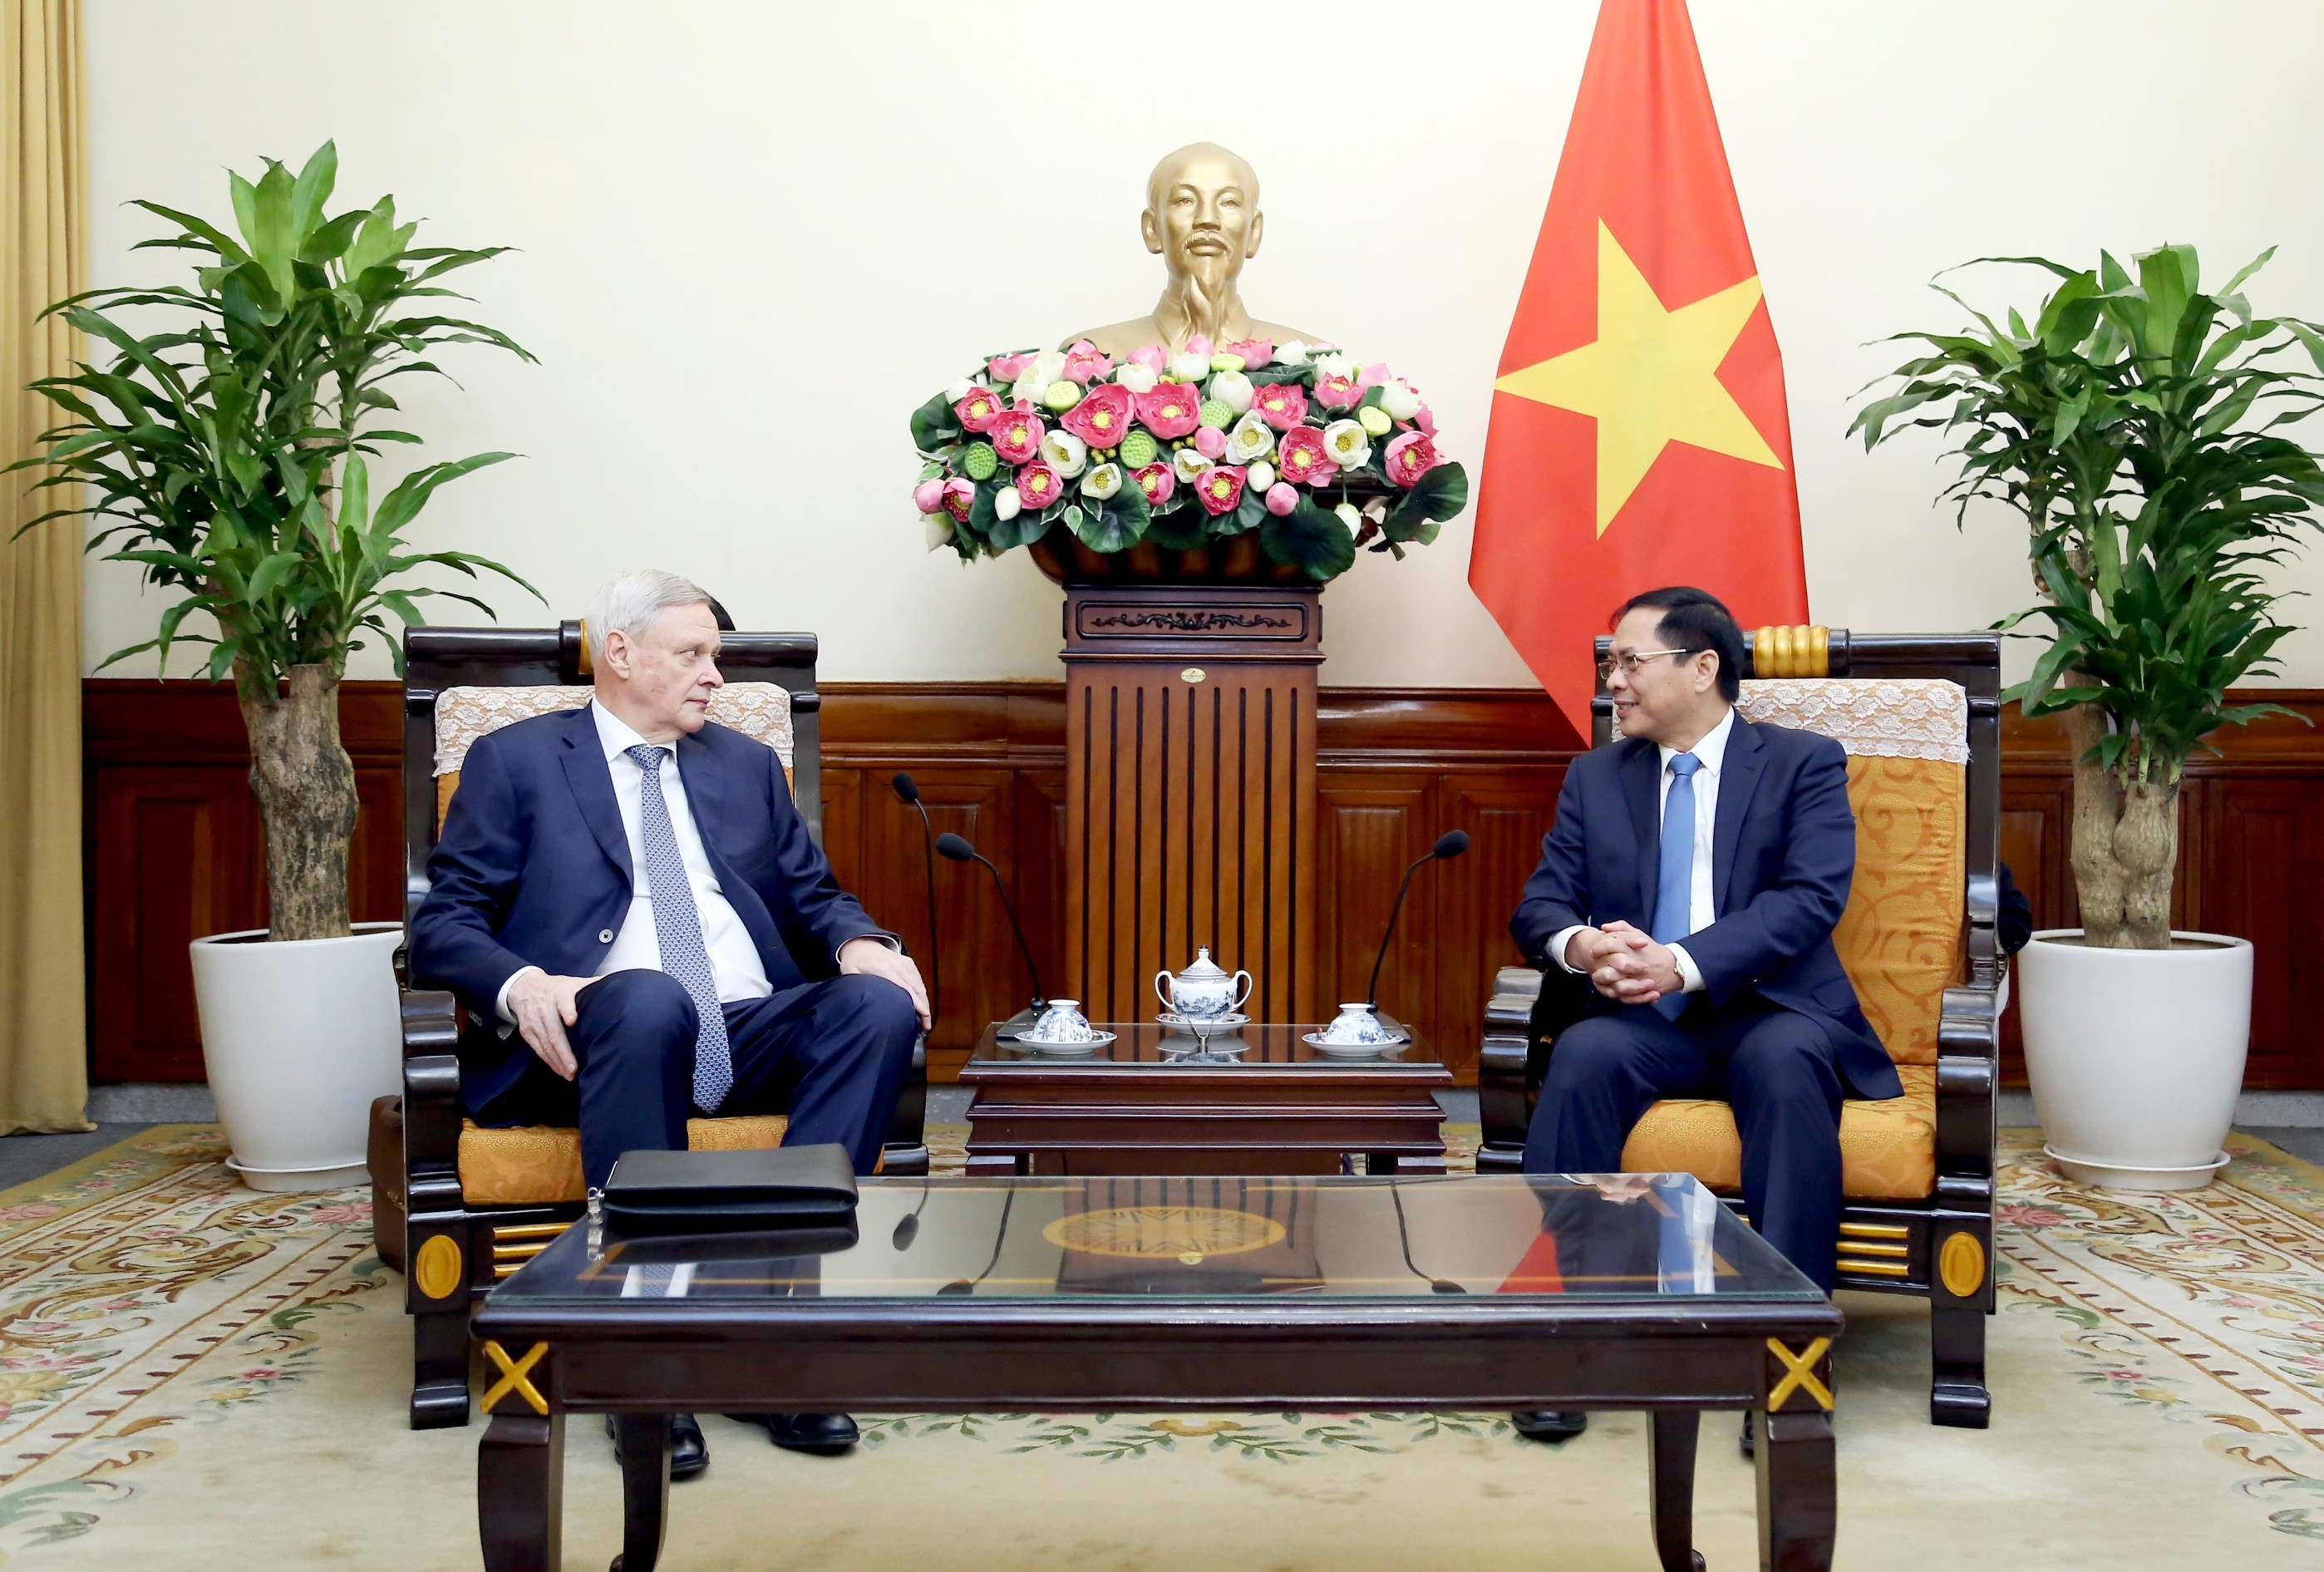 Tiêu điểm - Nga là một trong những đối tác ưu tiên hàng đầu trong chính sách đối ngoại của Việt Nam